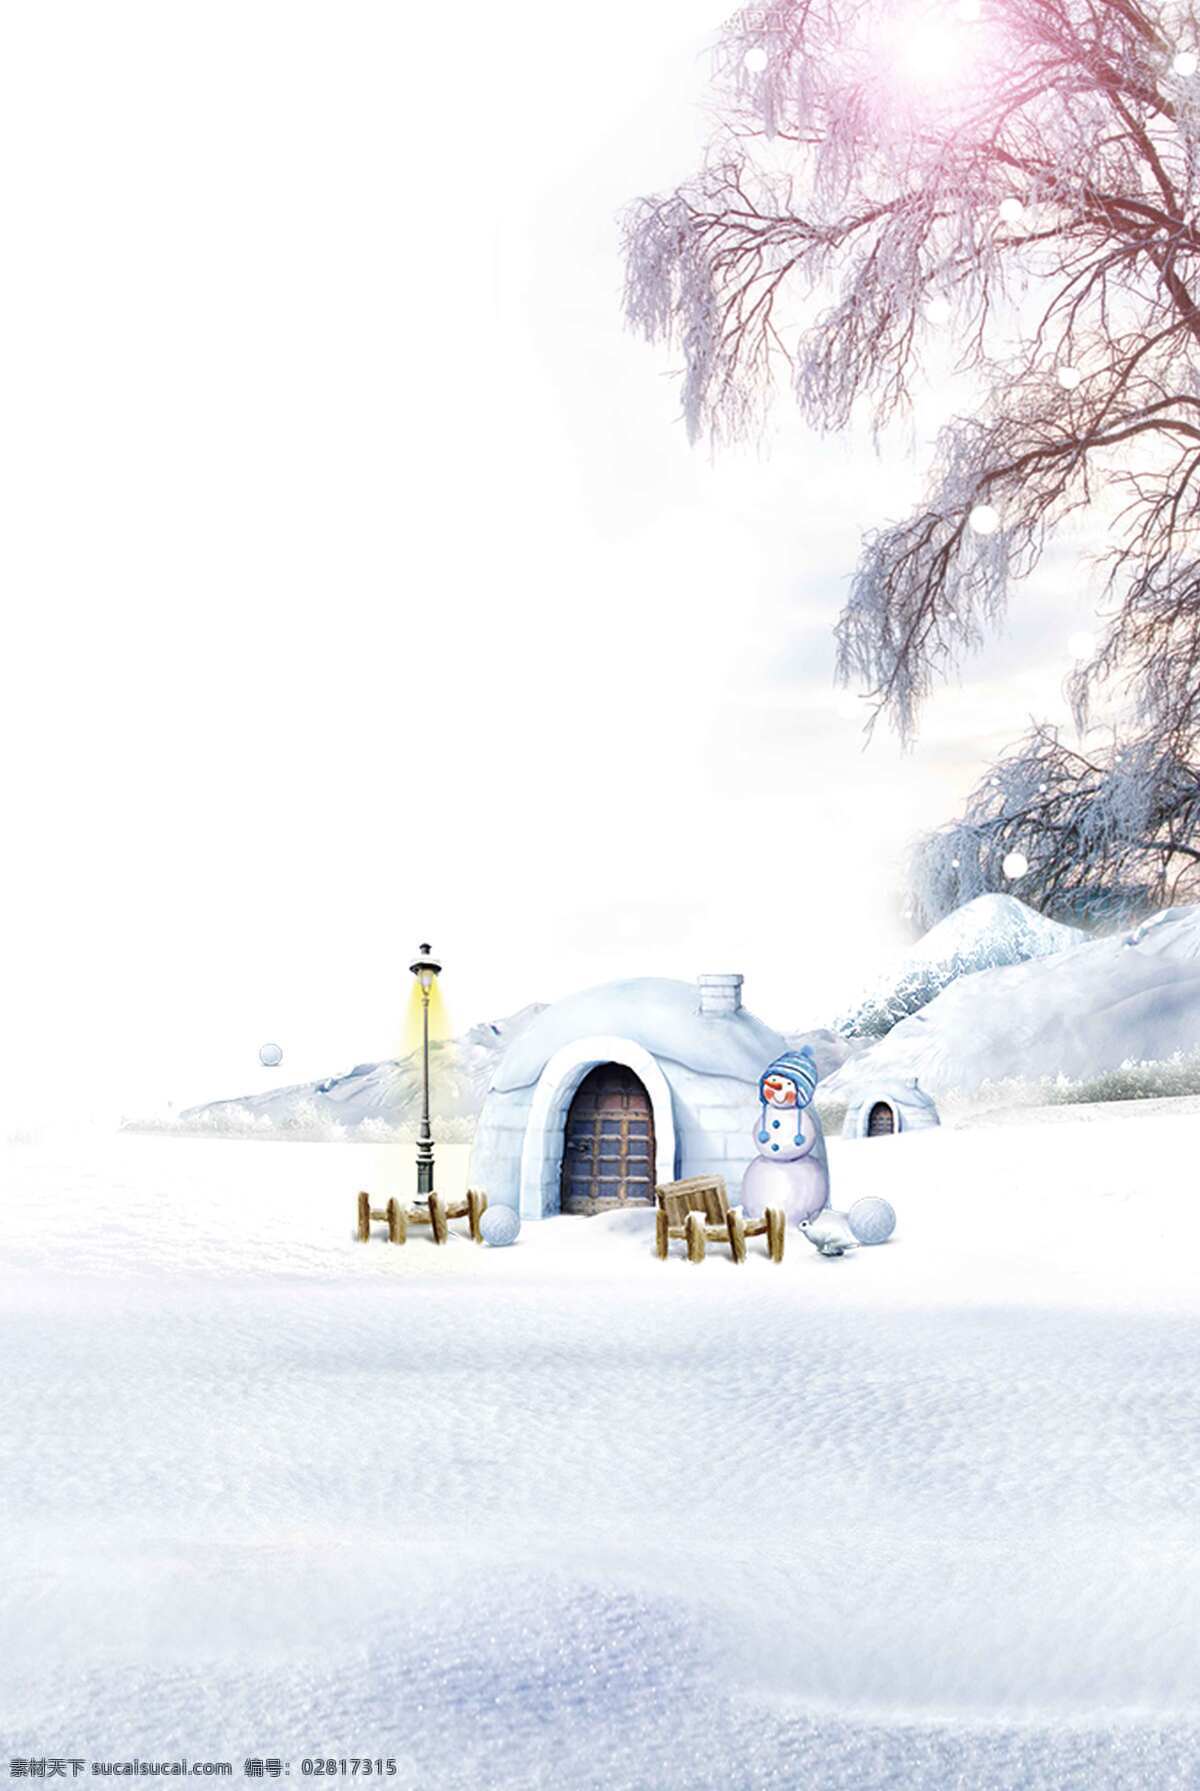 唯美 阳光 冰 屋 背景 浪漫 冬季 雪人 冰屋 海报 广告